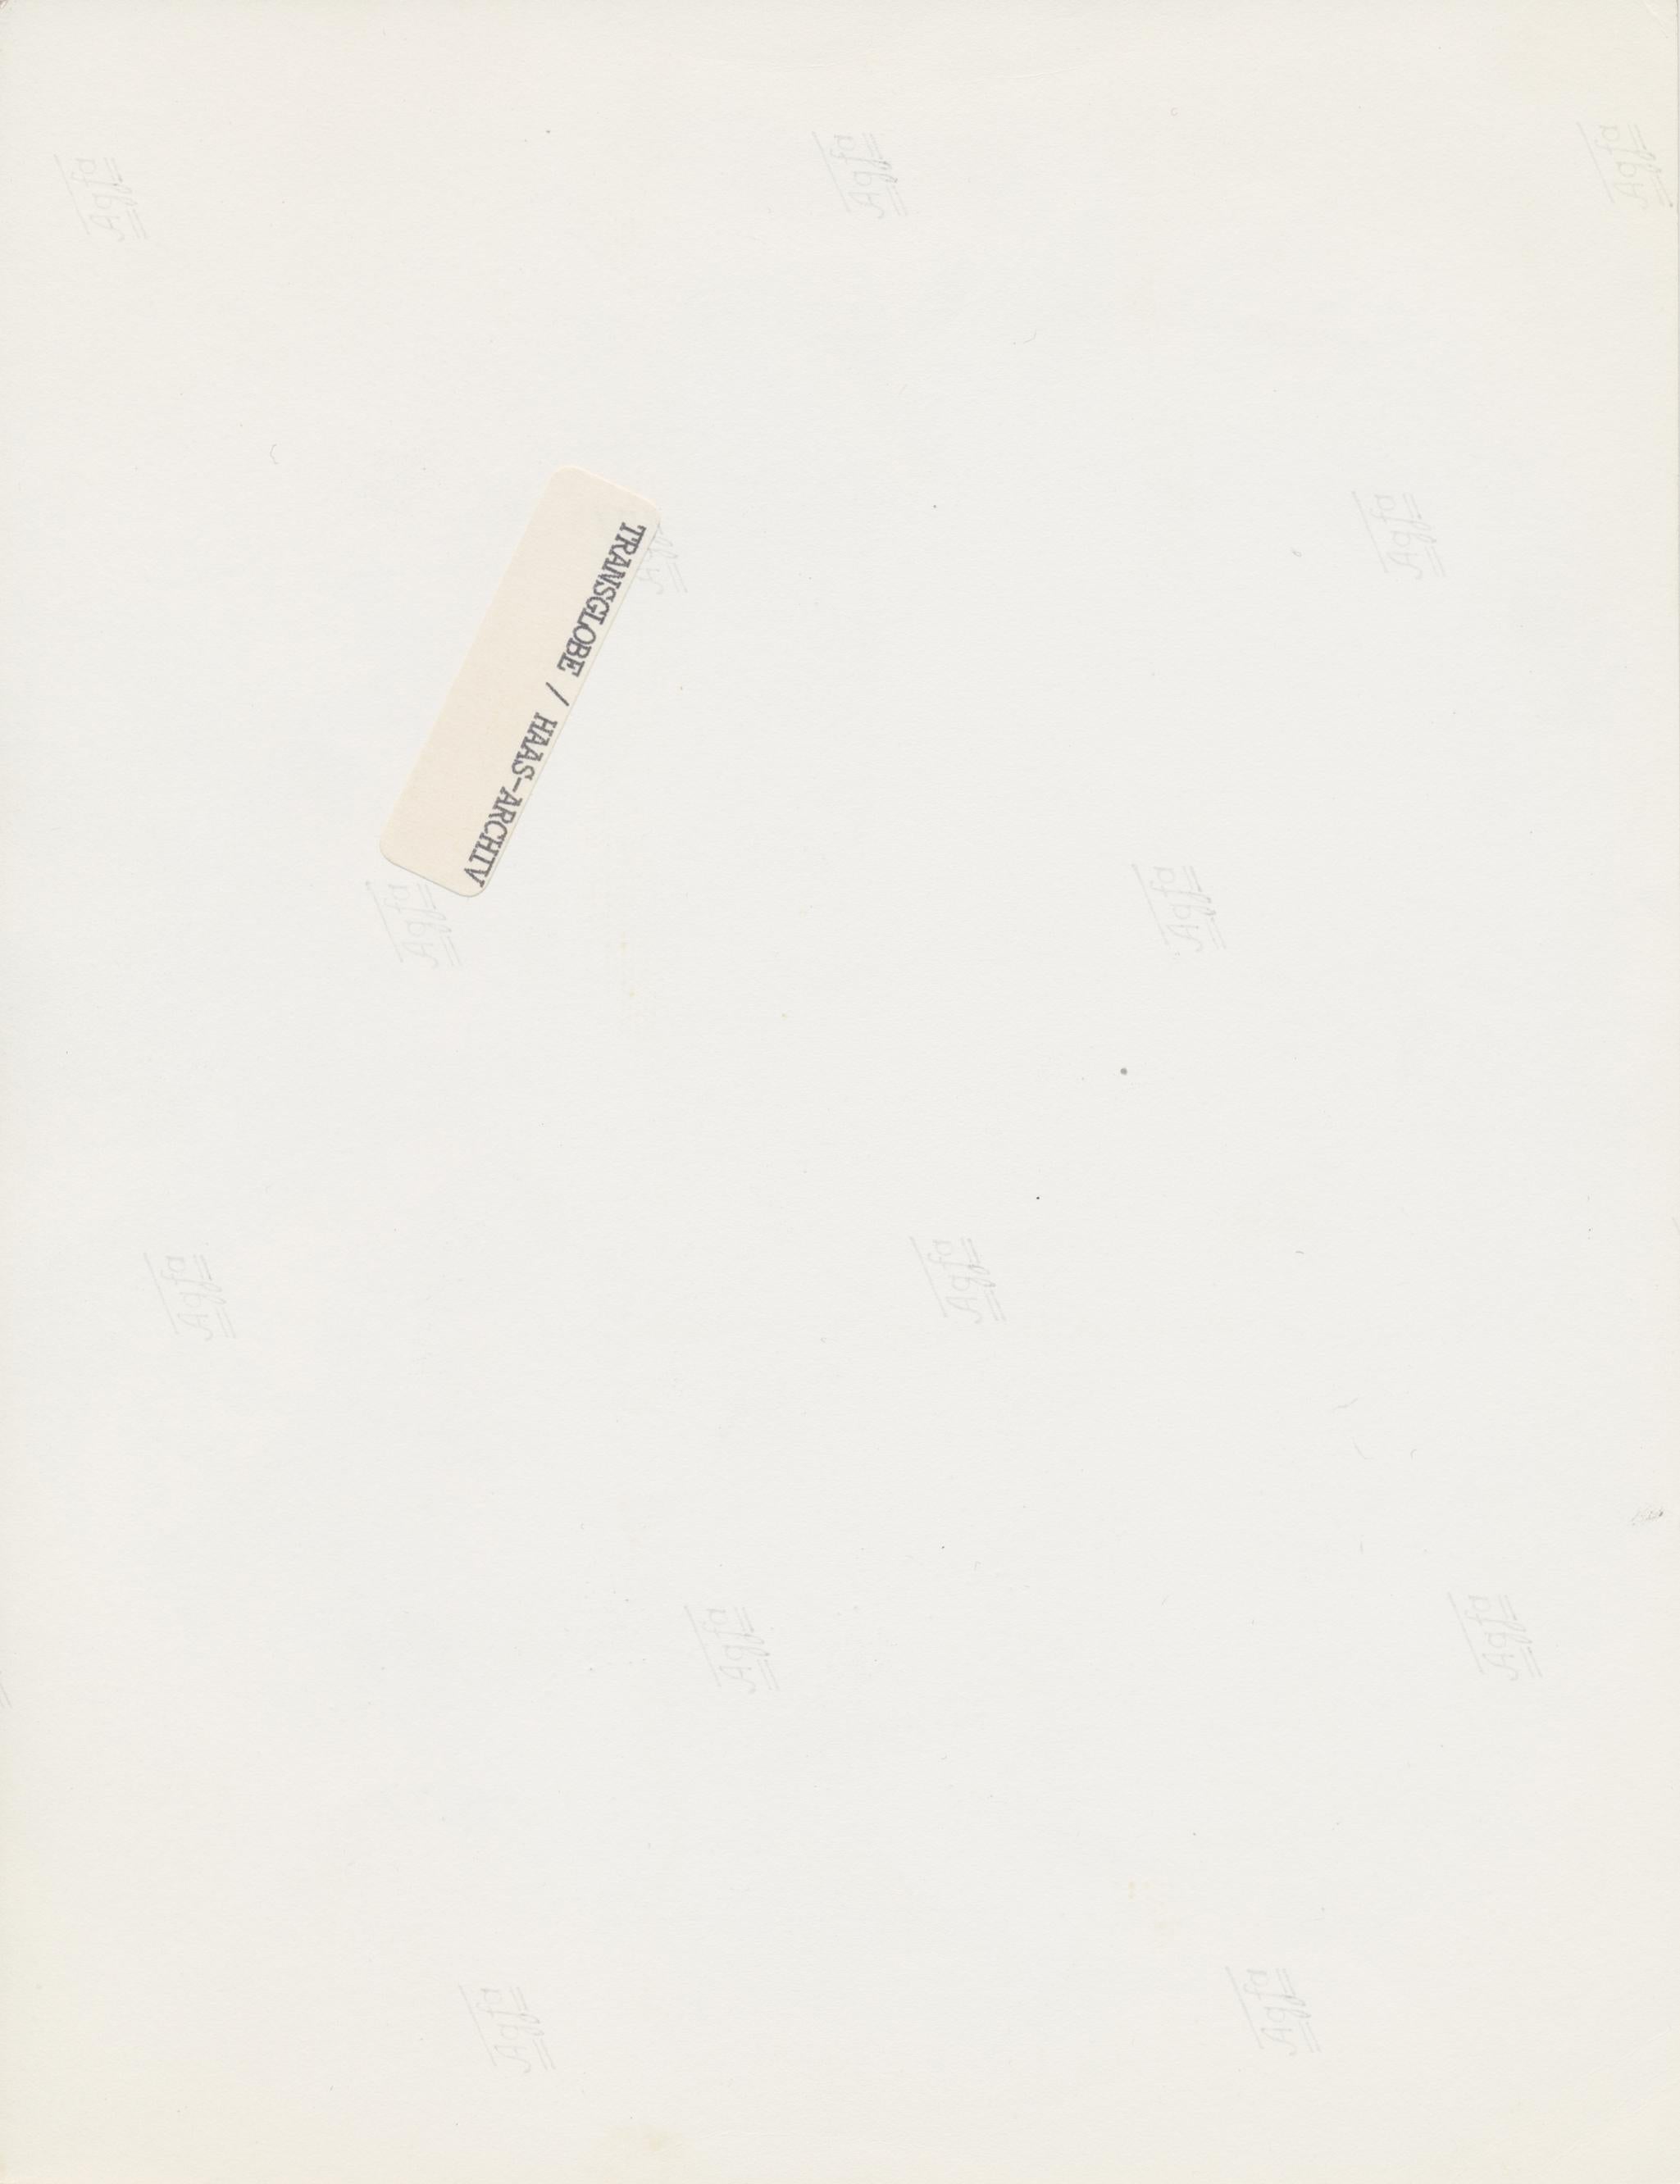 George Harrison, Gitarre, Schwarz-Weiß-Fotografie, ca. 1970er Jahre, 17,2 x 22,8 cm (Moderne), Photograph, von Martin Weaver